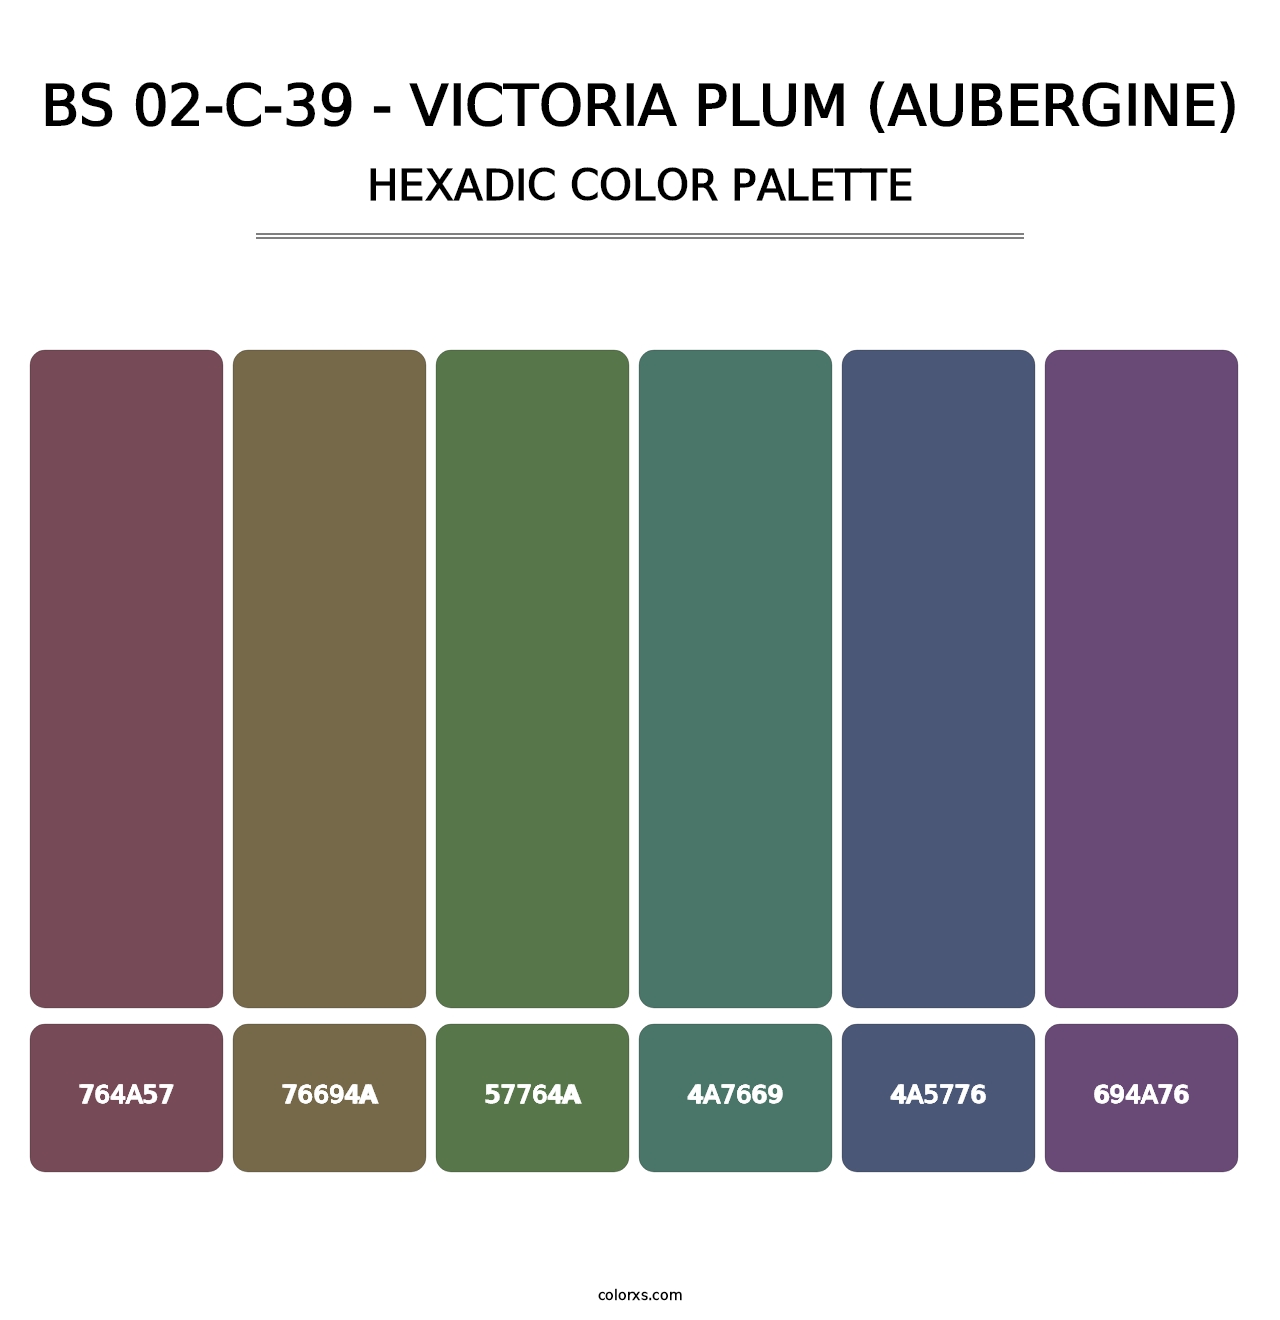 BS 02-C-39 - Victoria Plum (Aubergine) - Hexadic Color Palette